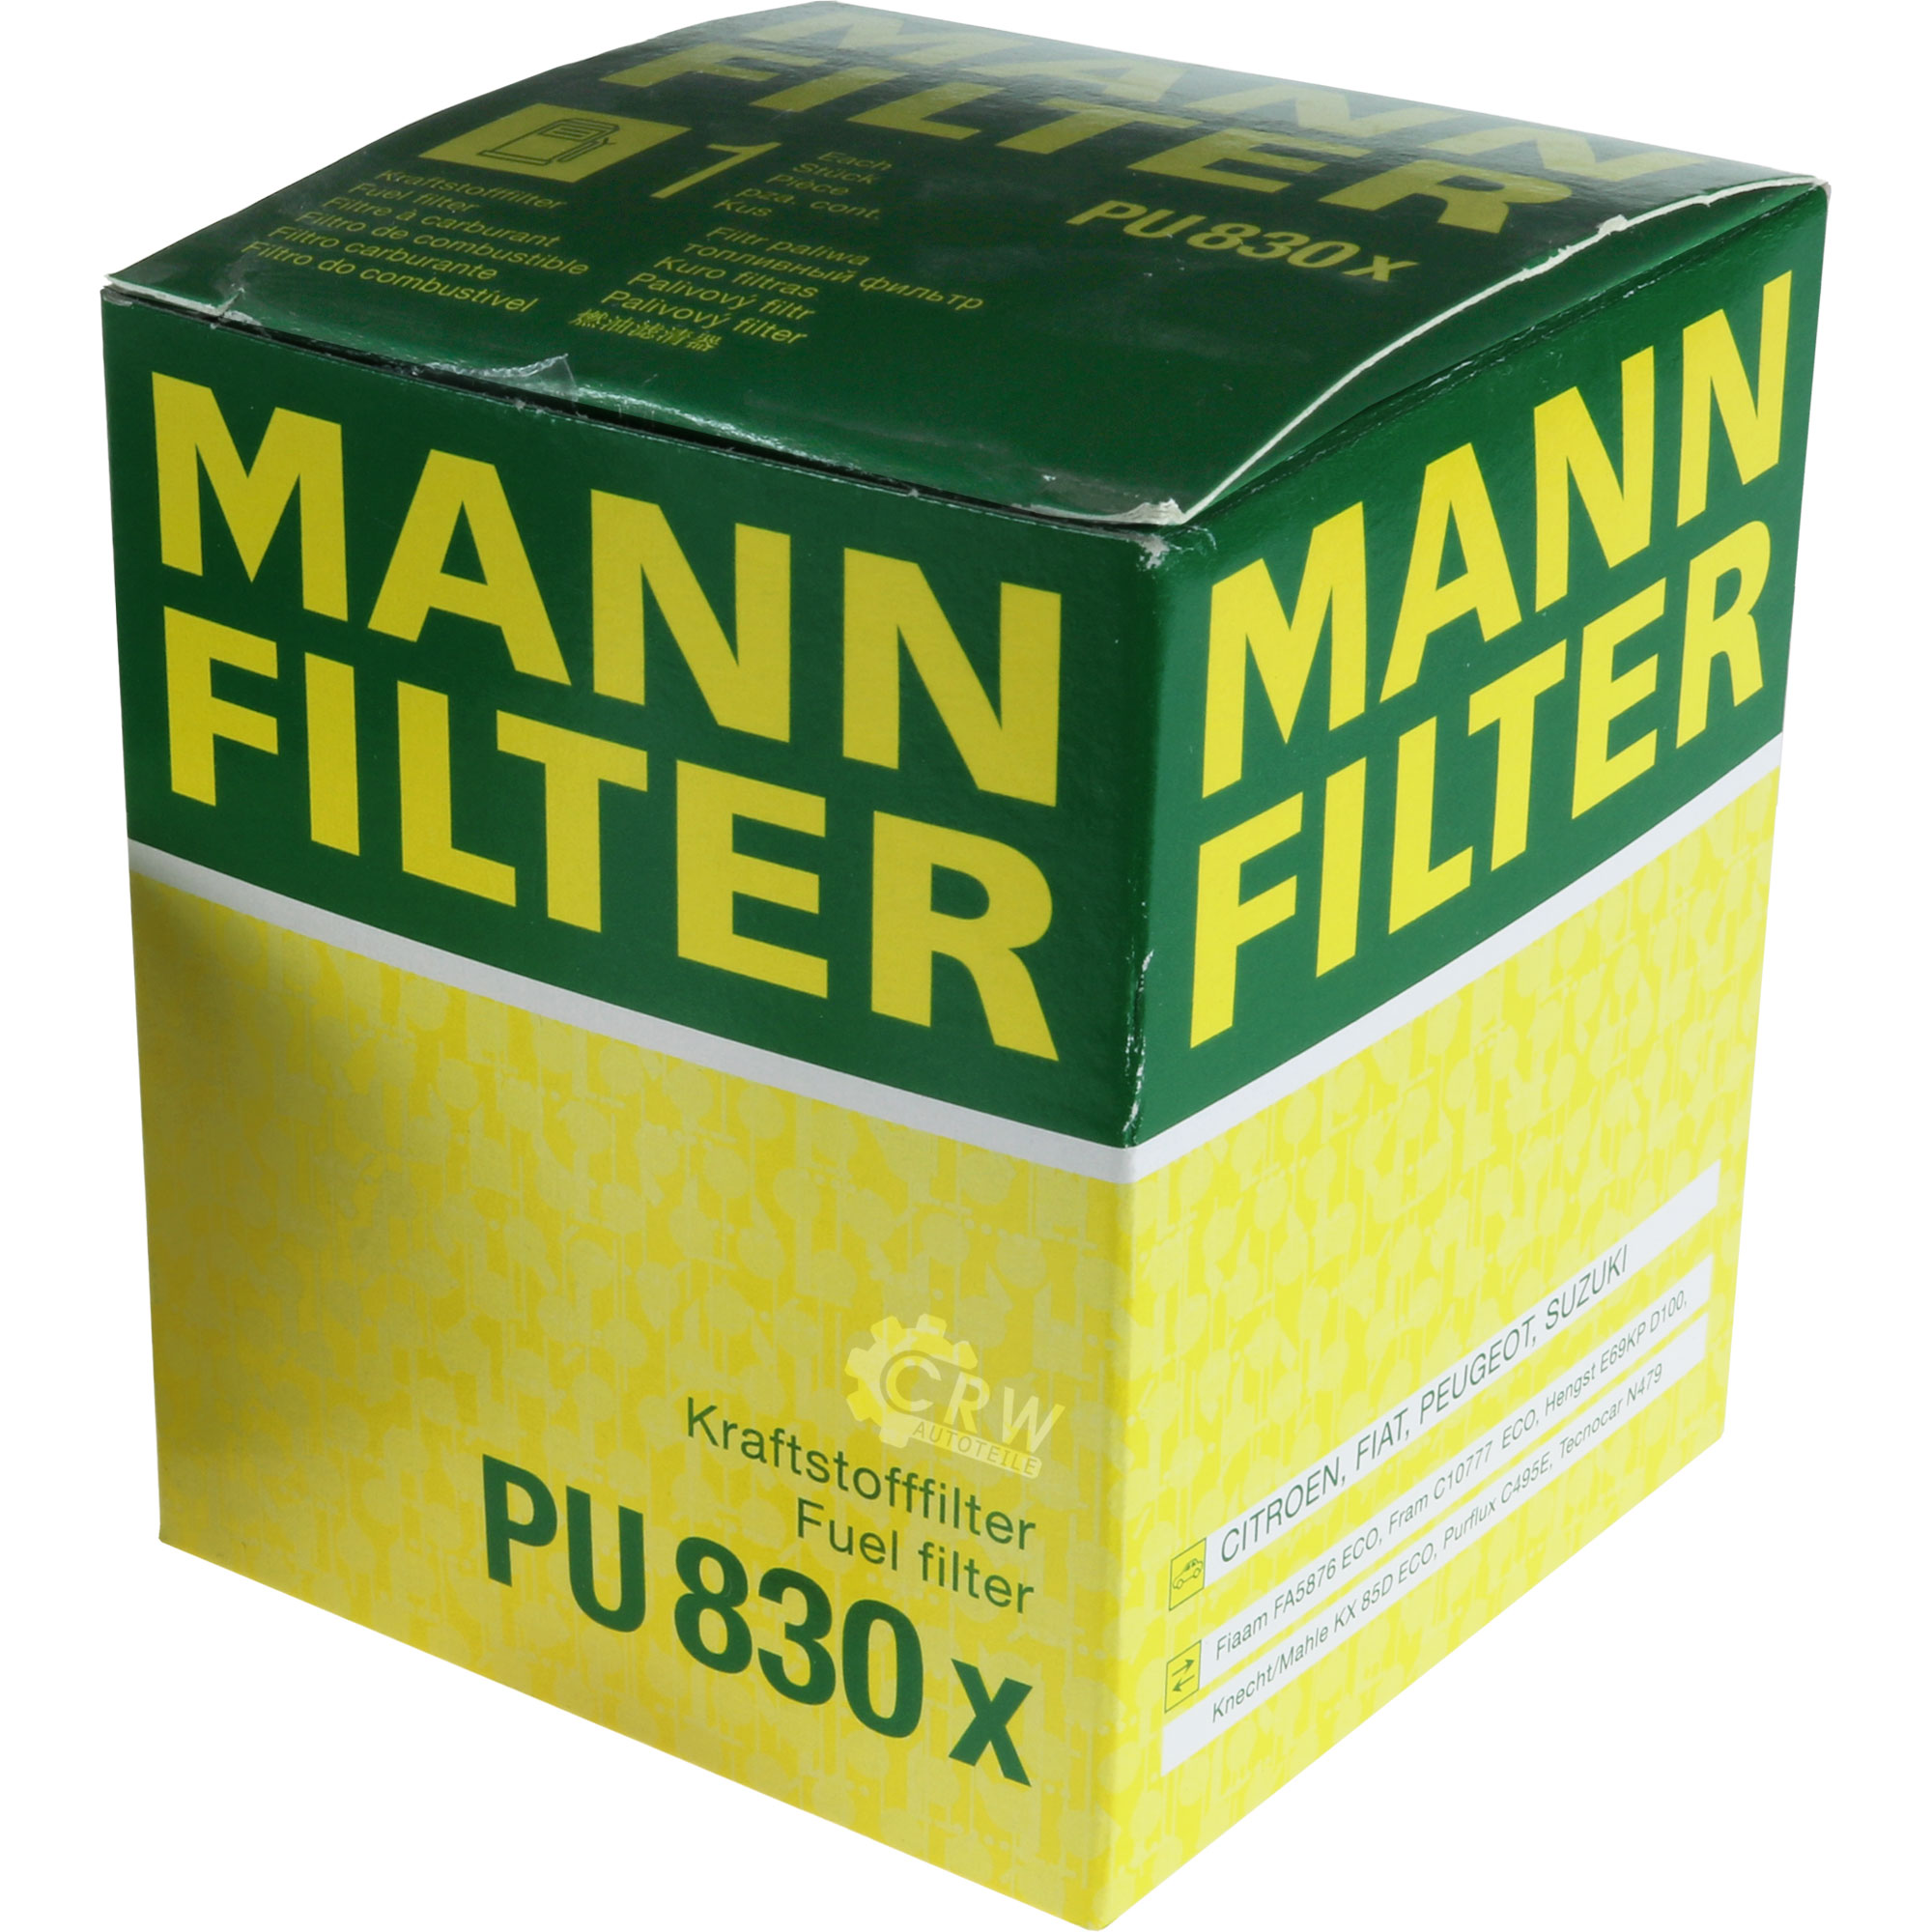 MANN-FILTER Kraftstofffilter PU 830 x Fuel Filter